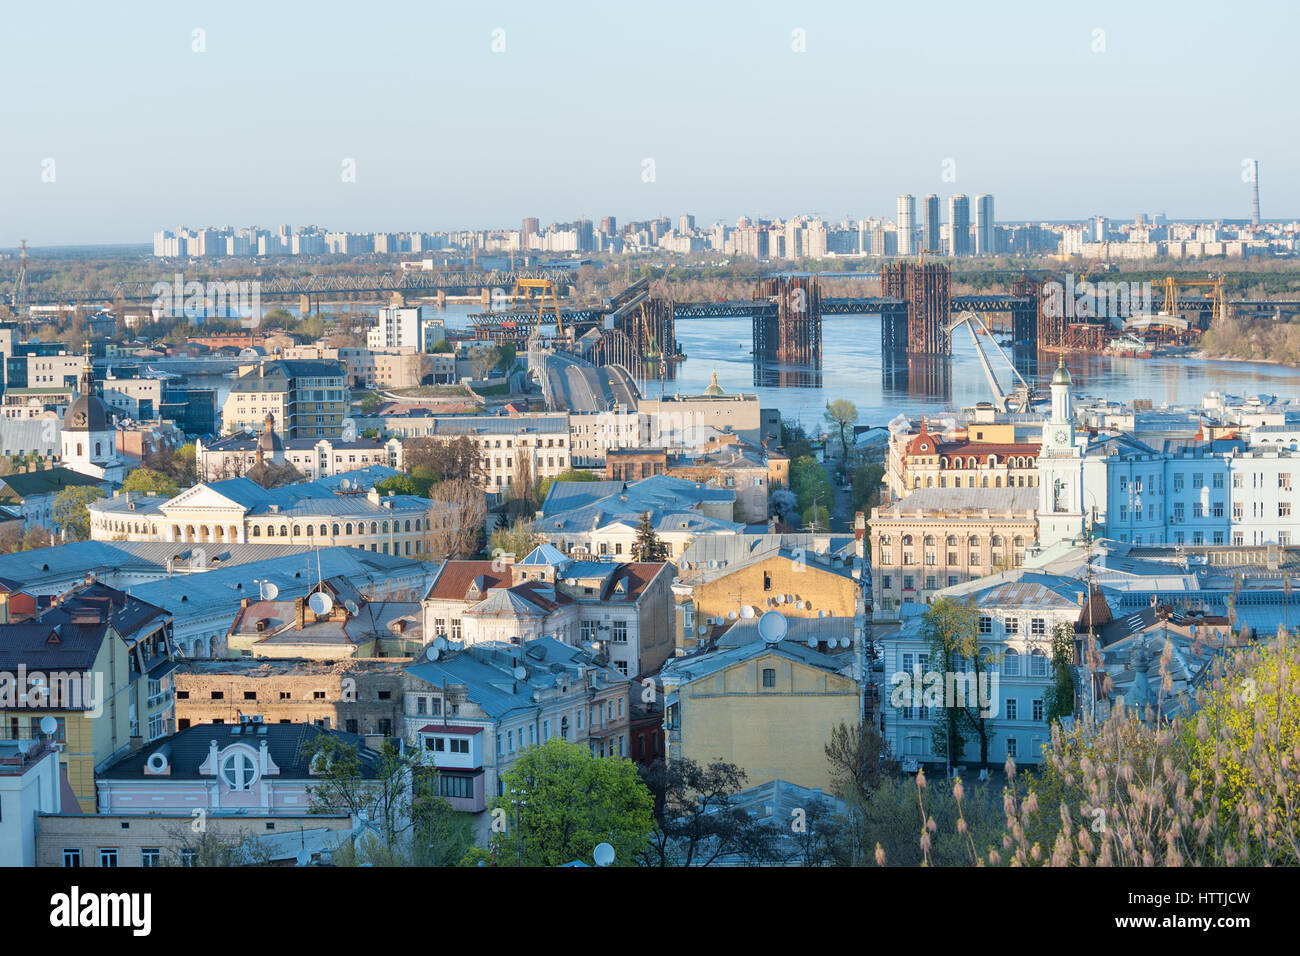 Vue panoramique du quartier historique de Podol par le fleuve Dniepr, Kiev, Ukraine Banque D'Images